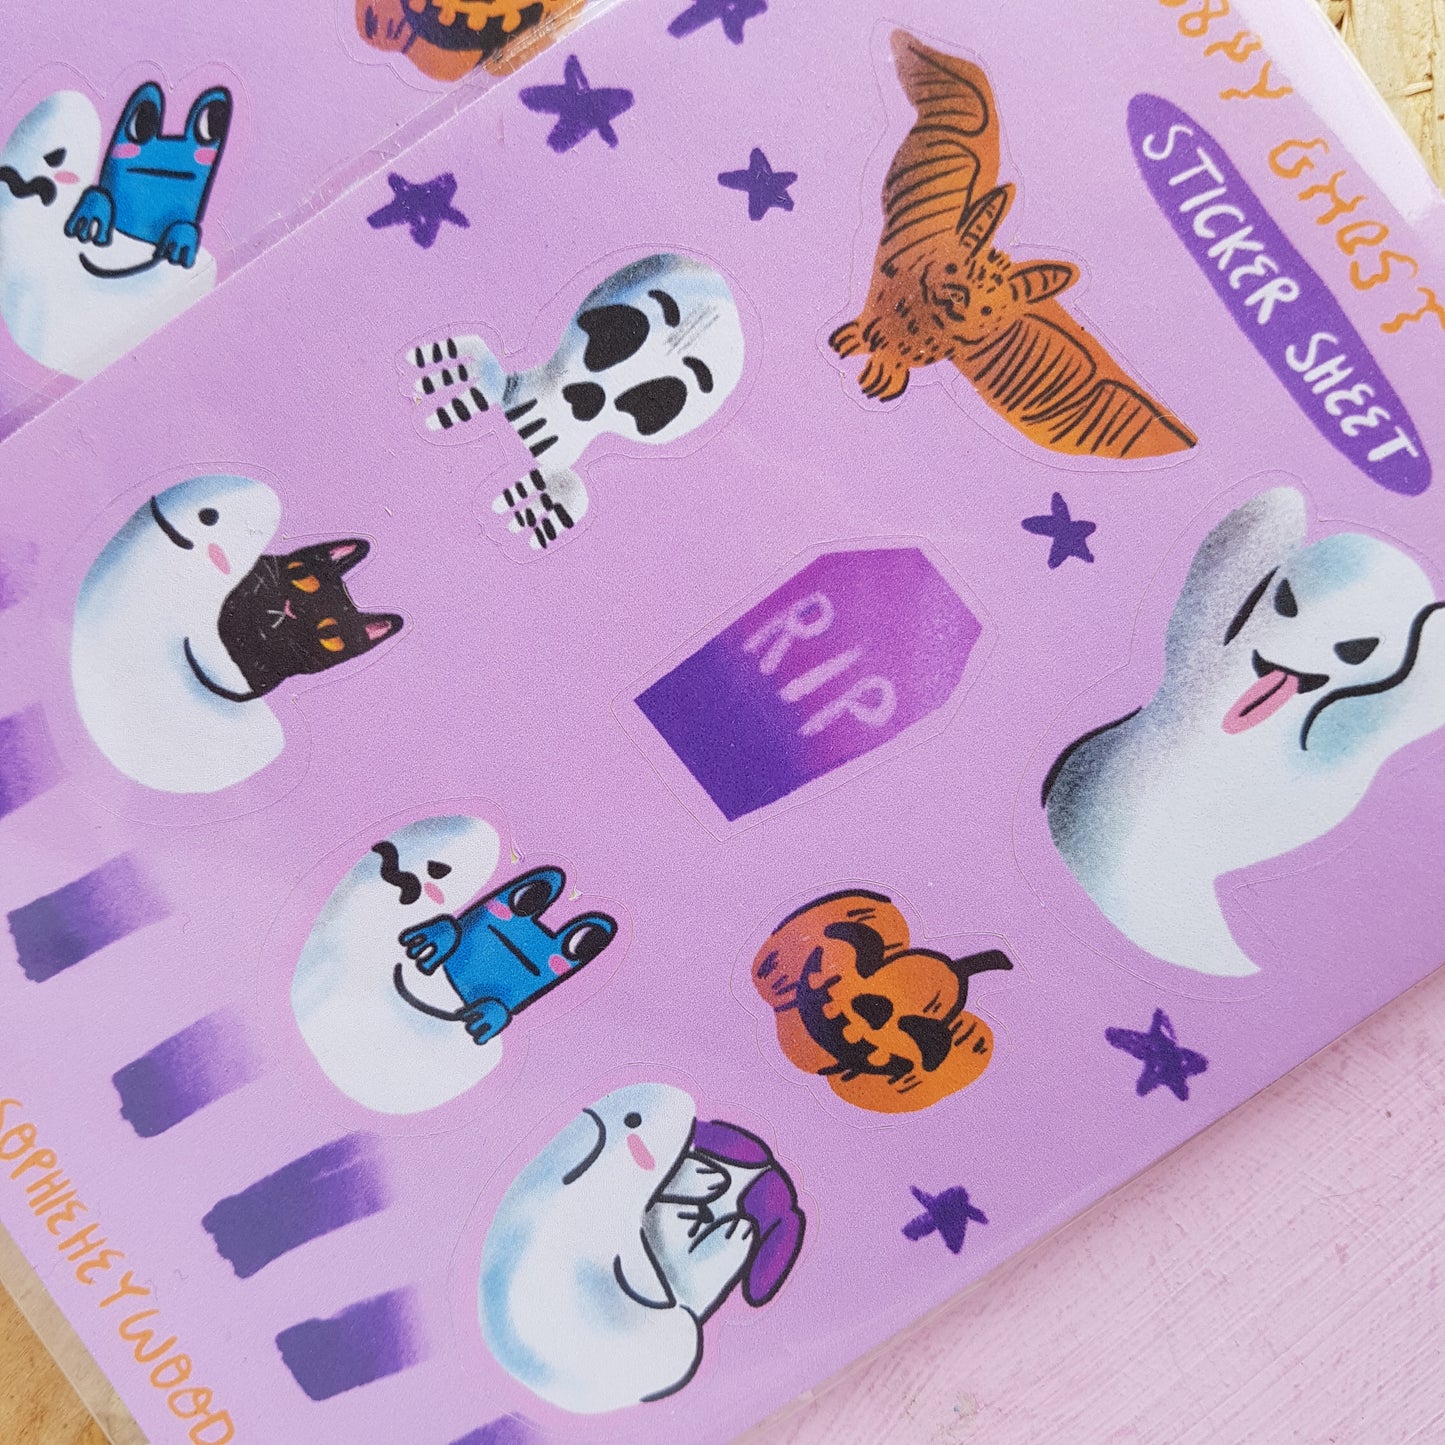 Spoopy Ghost Train Sticker Sheet